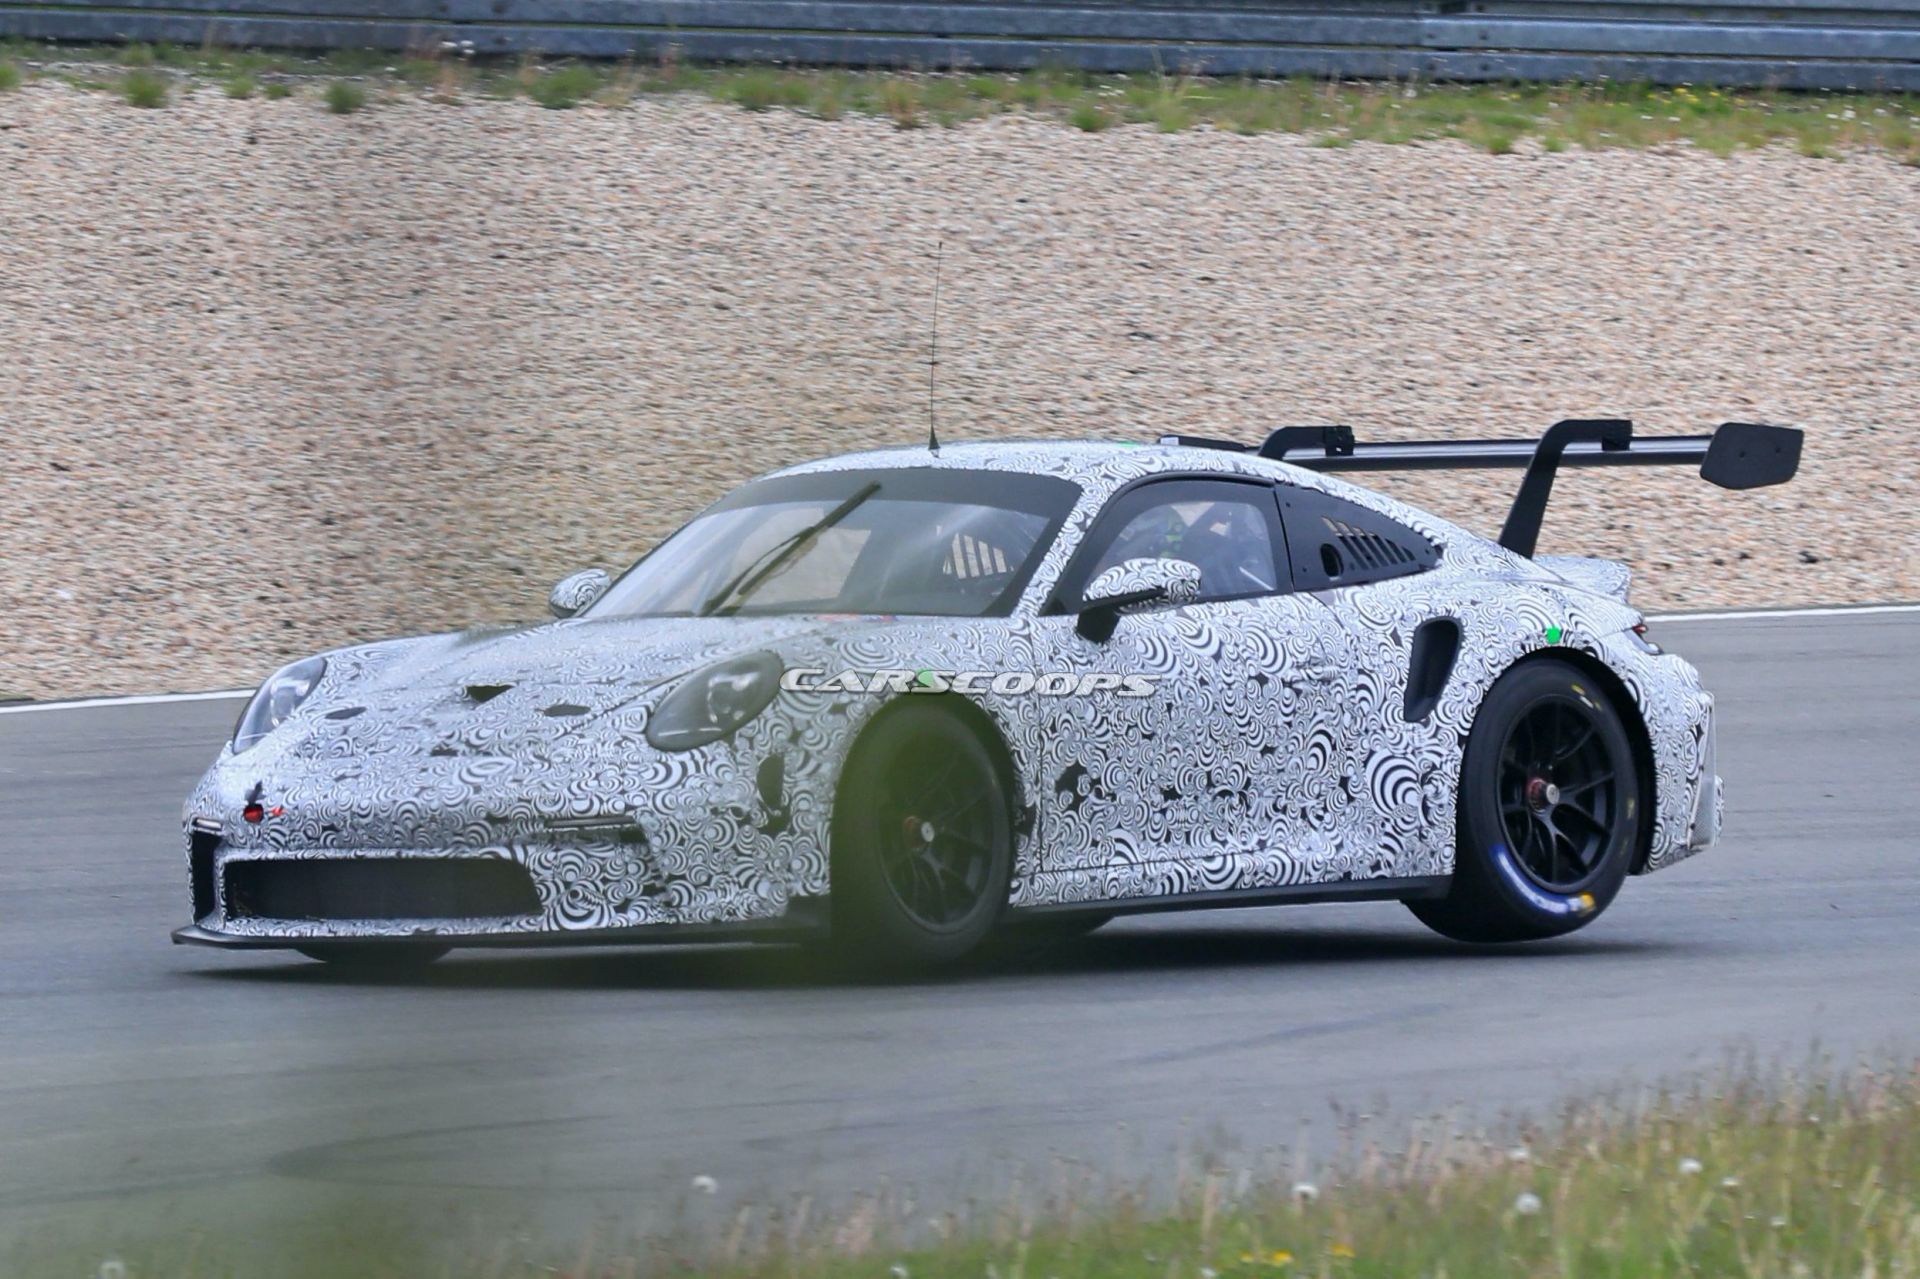 992 Based 2021 Porsche 911 GT3 R Racer Makes Spy Debut At The Nürburgring